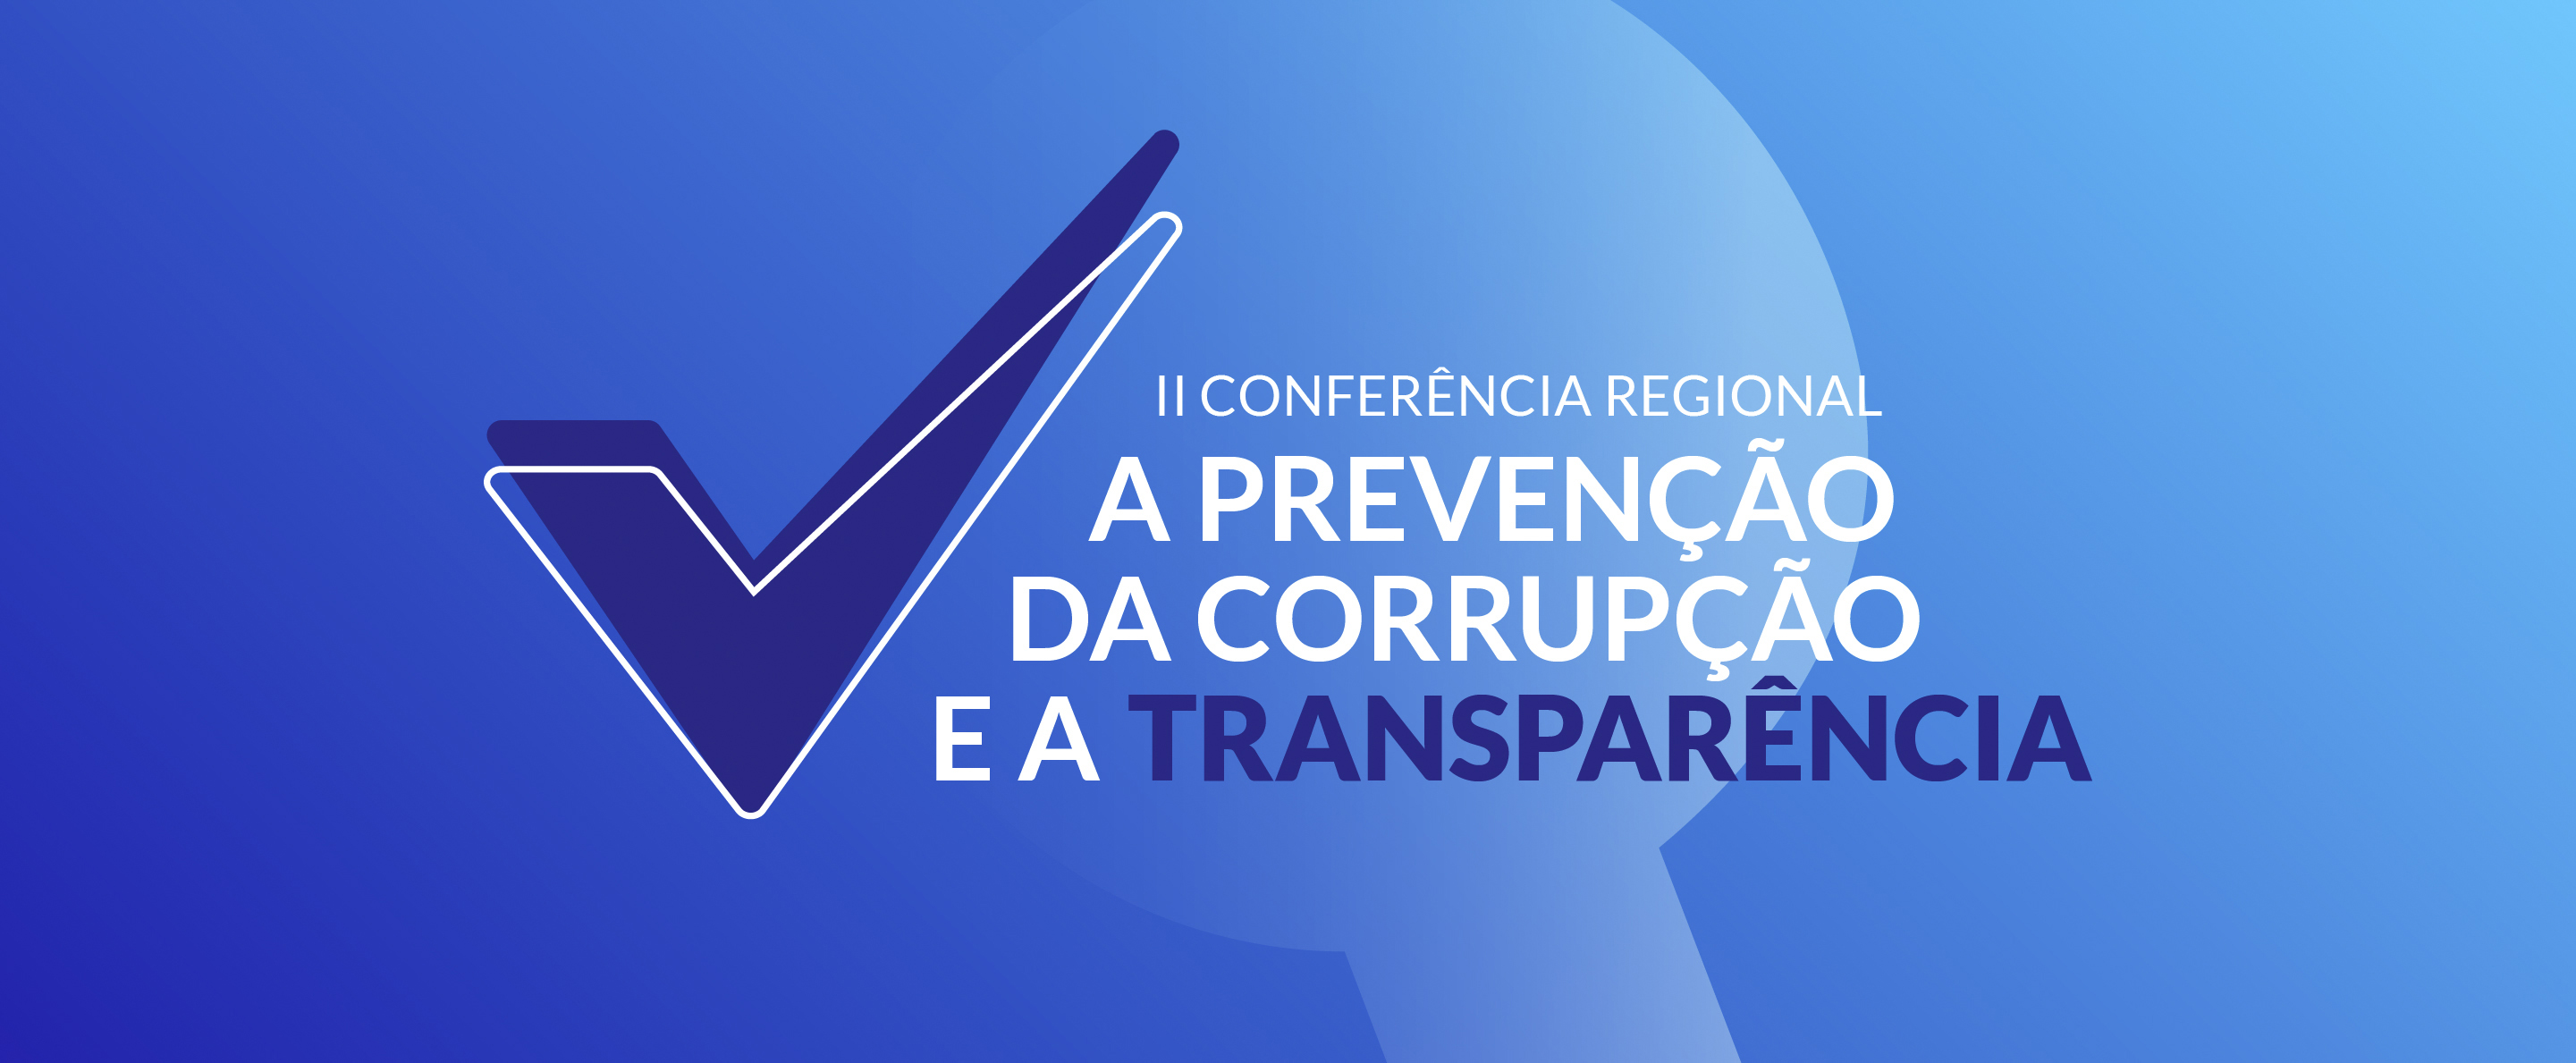 Segunda conferência dedicada à prevenção da corrupção decorre a 7 de dezembro